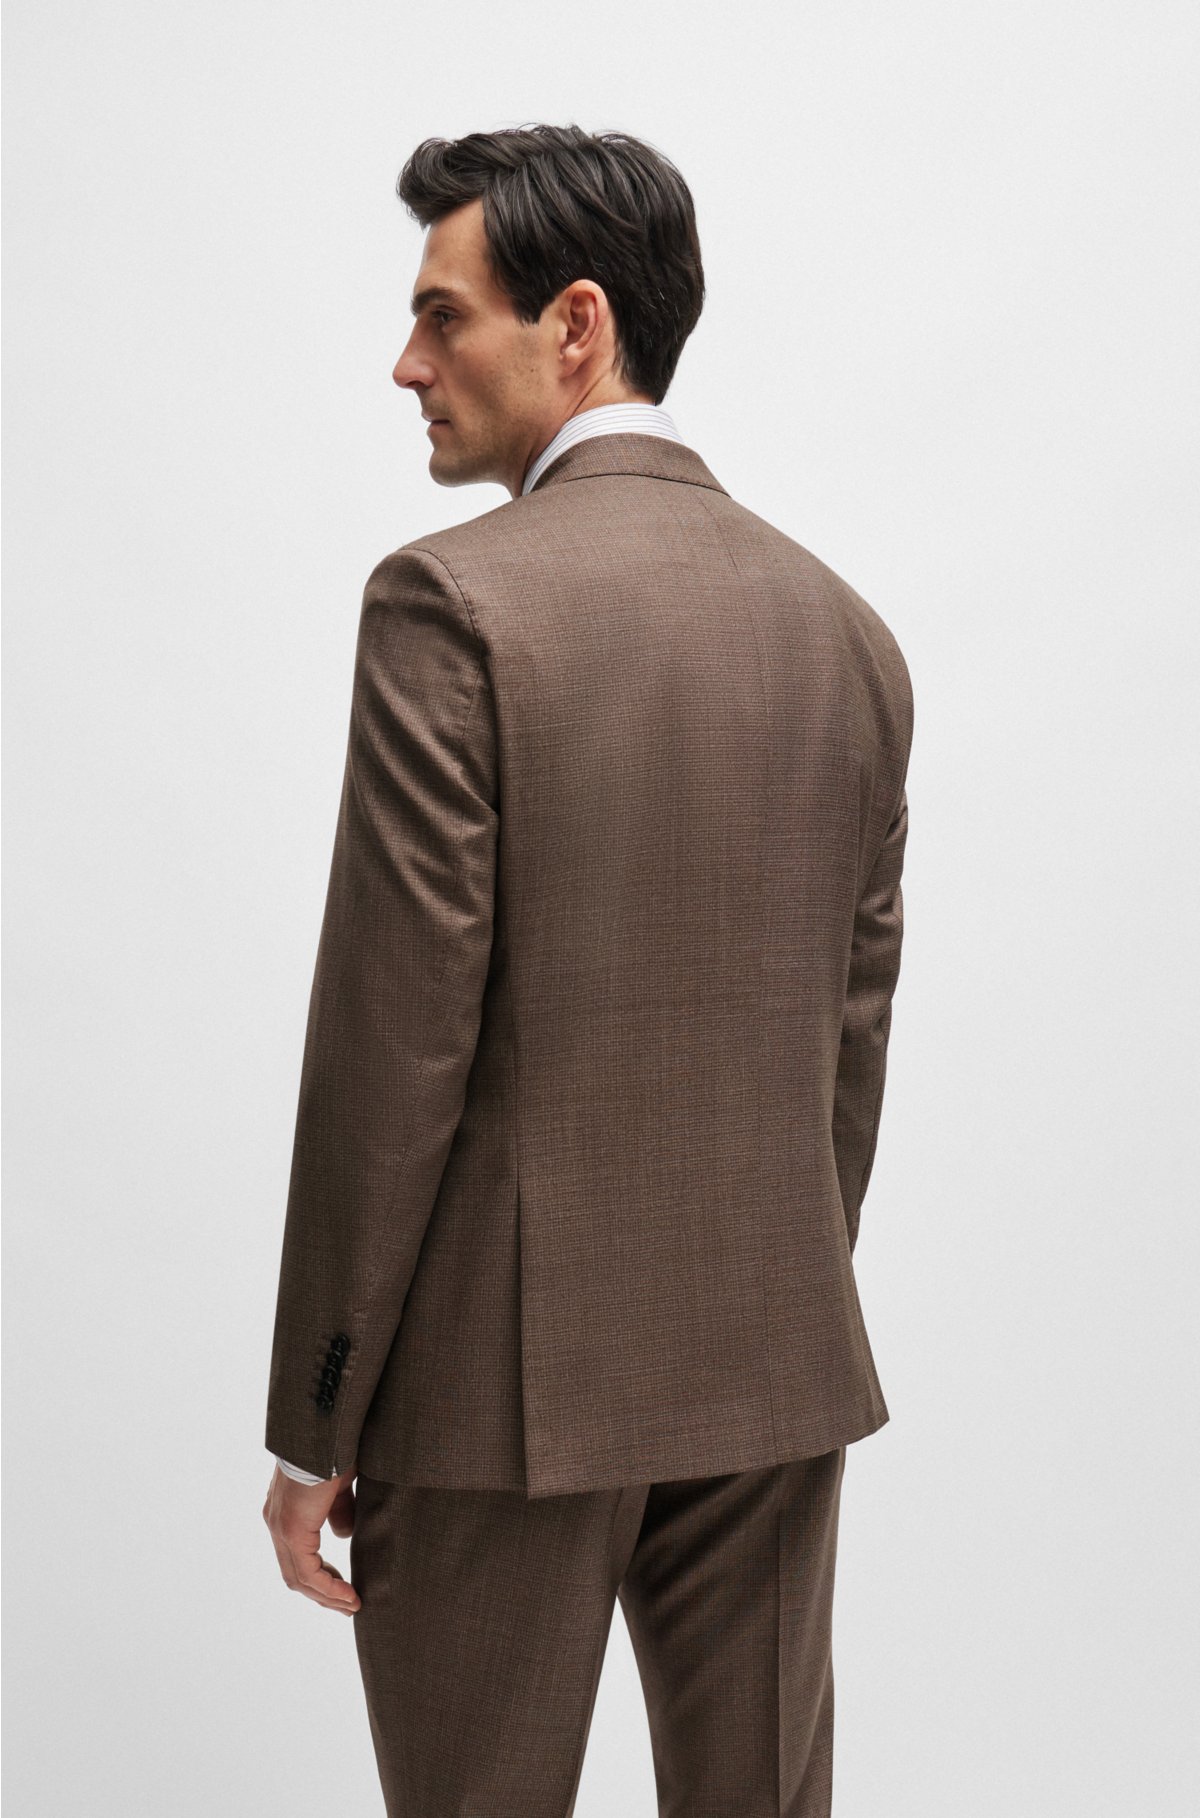 Regular-fit suit in micro-patterned virgin wool, Brown